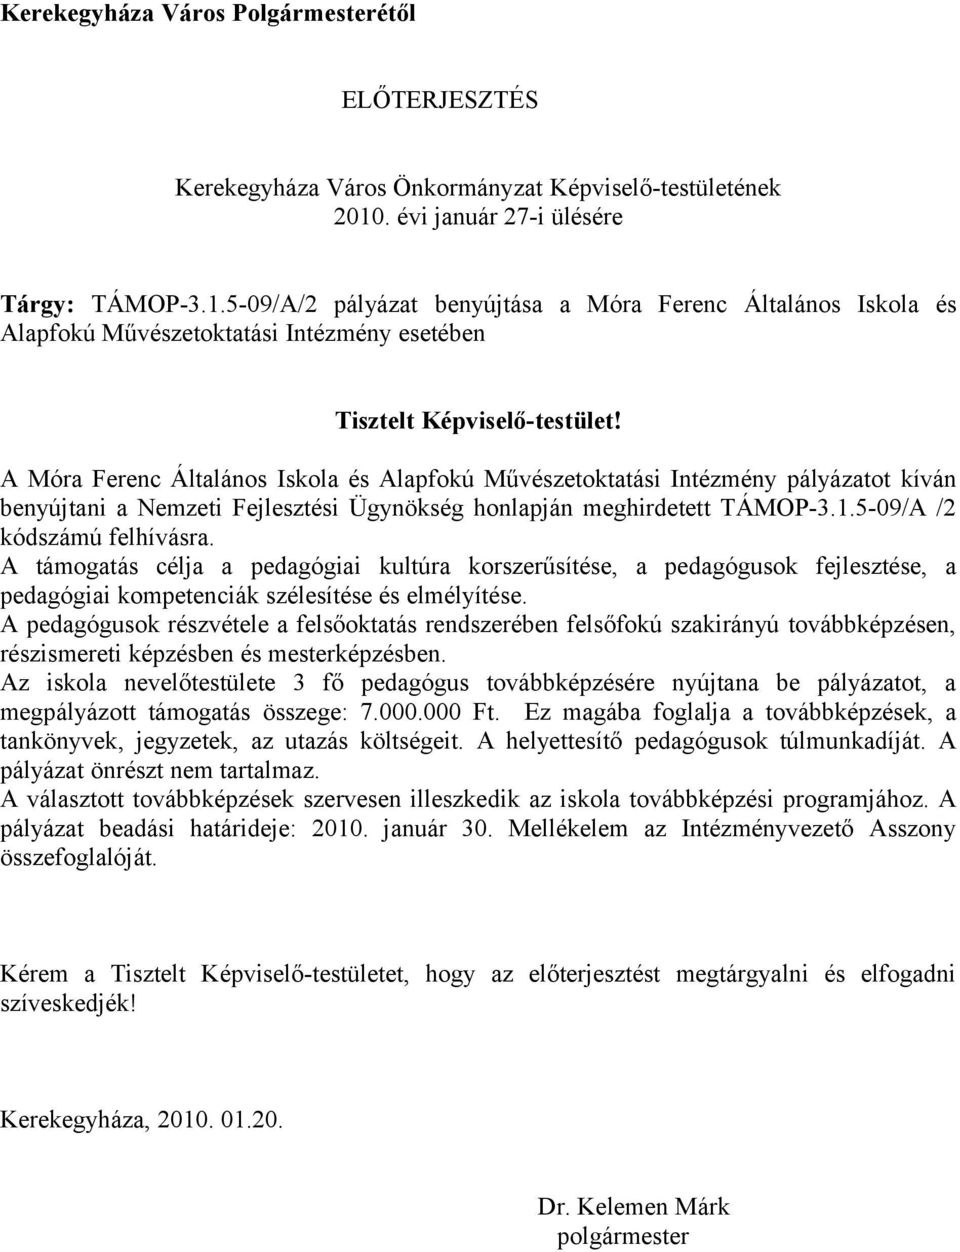 A Móra Ferenc Általános Iskola és Alapfokú Művészetoktatási Intézmény pályázatot kíván benyújtani a Nemzeti Fejlesztési Ügynökség honlapján meghirdetett TÁMOP-3.1.5-09/A /2 kódszámú felhívásra.